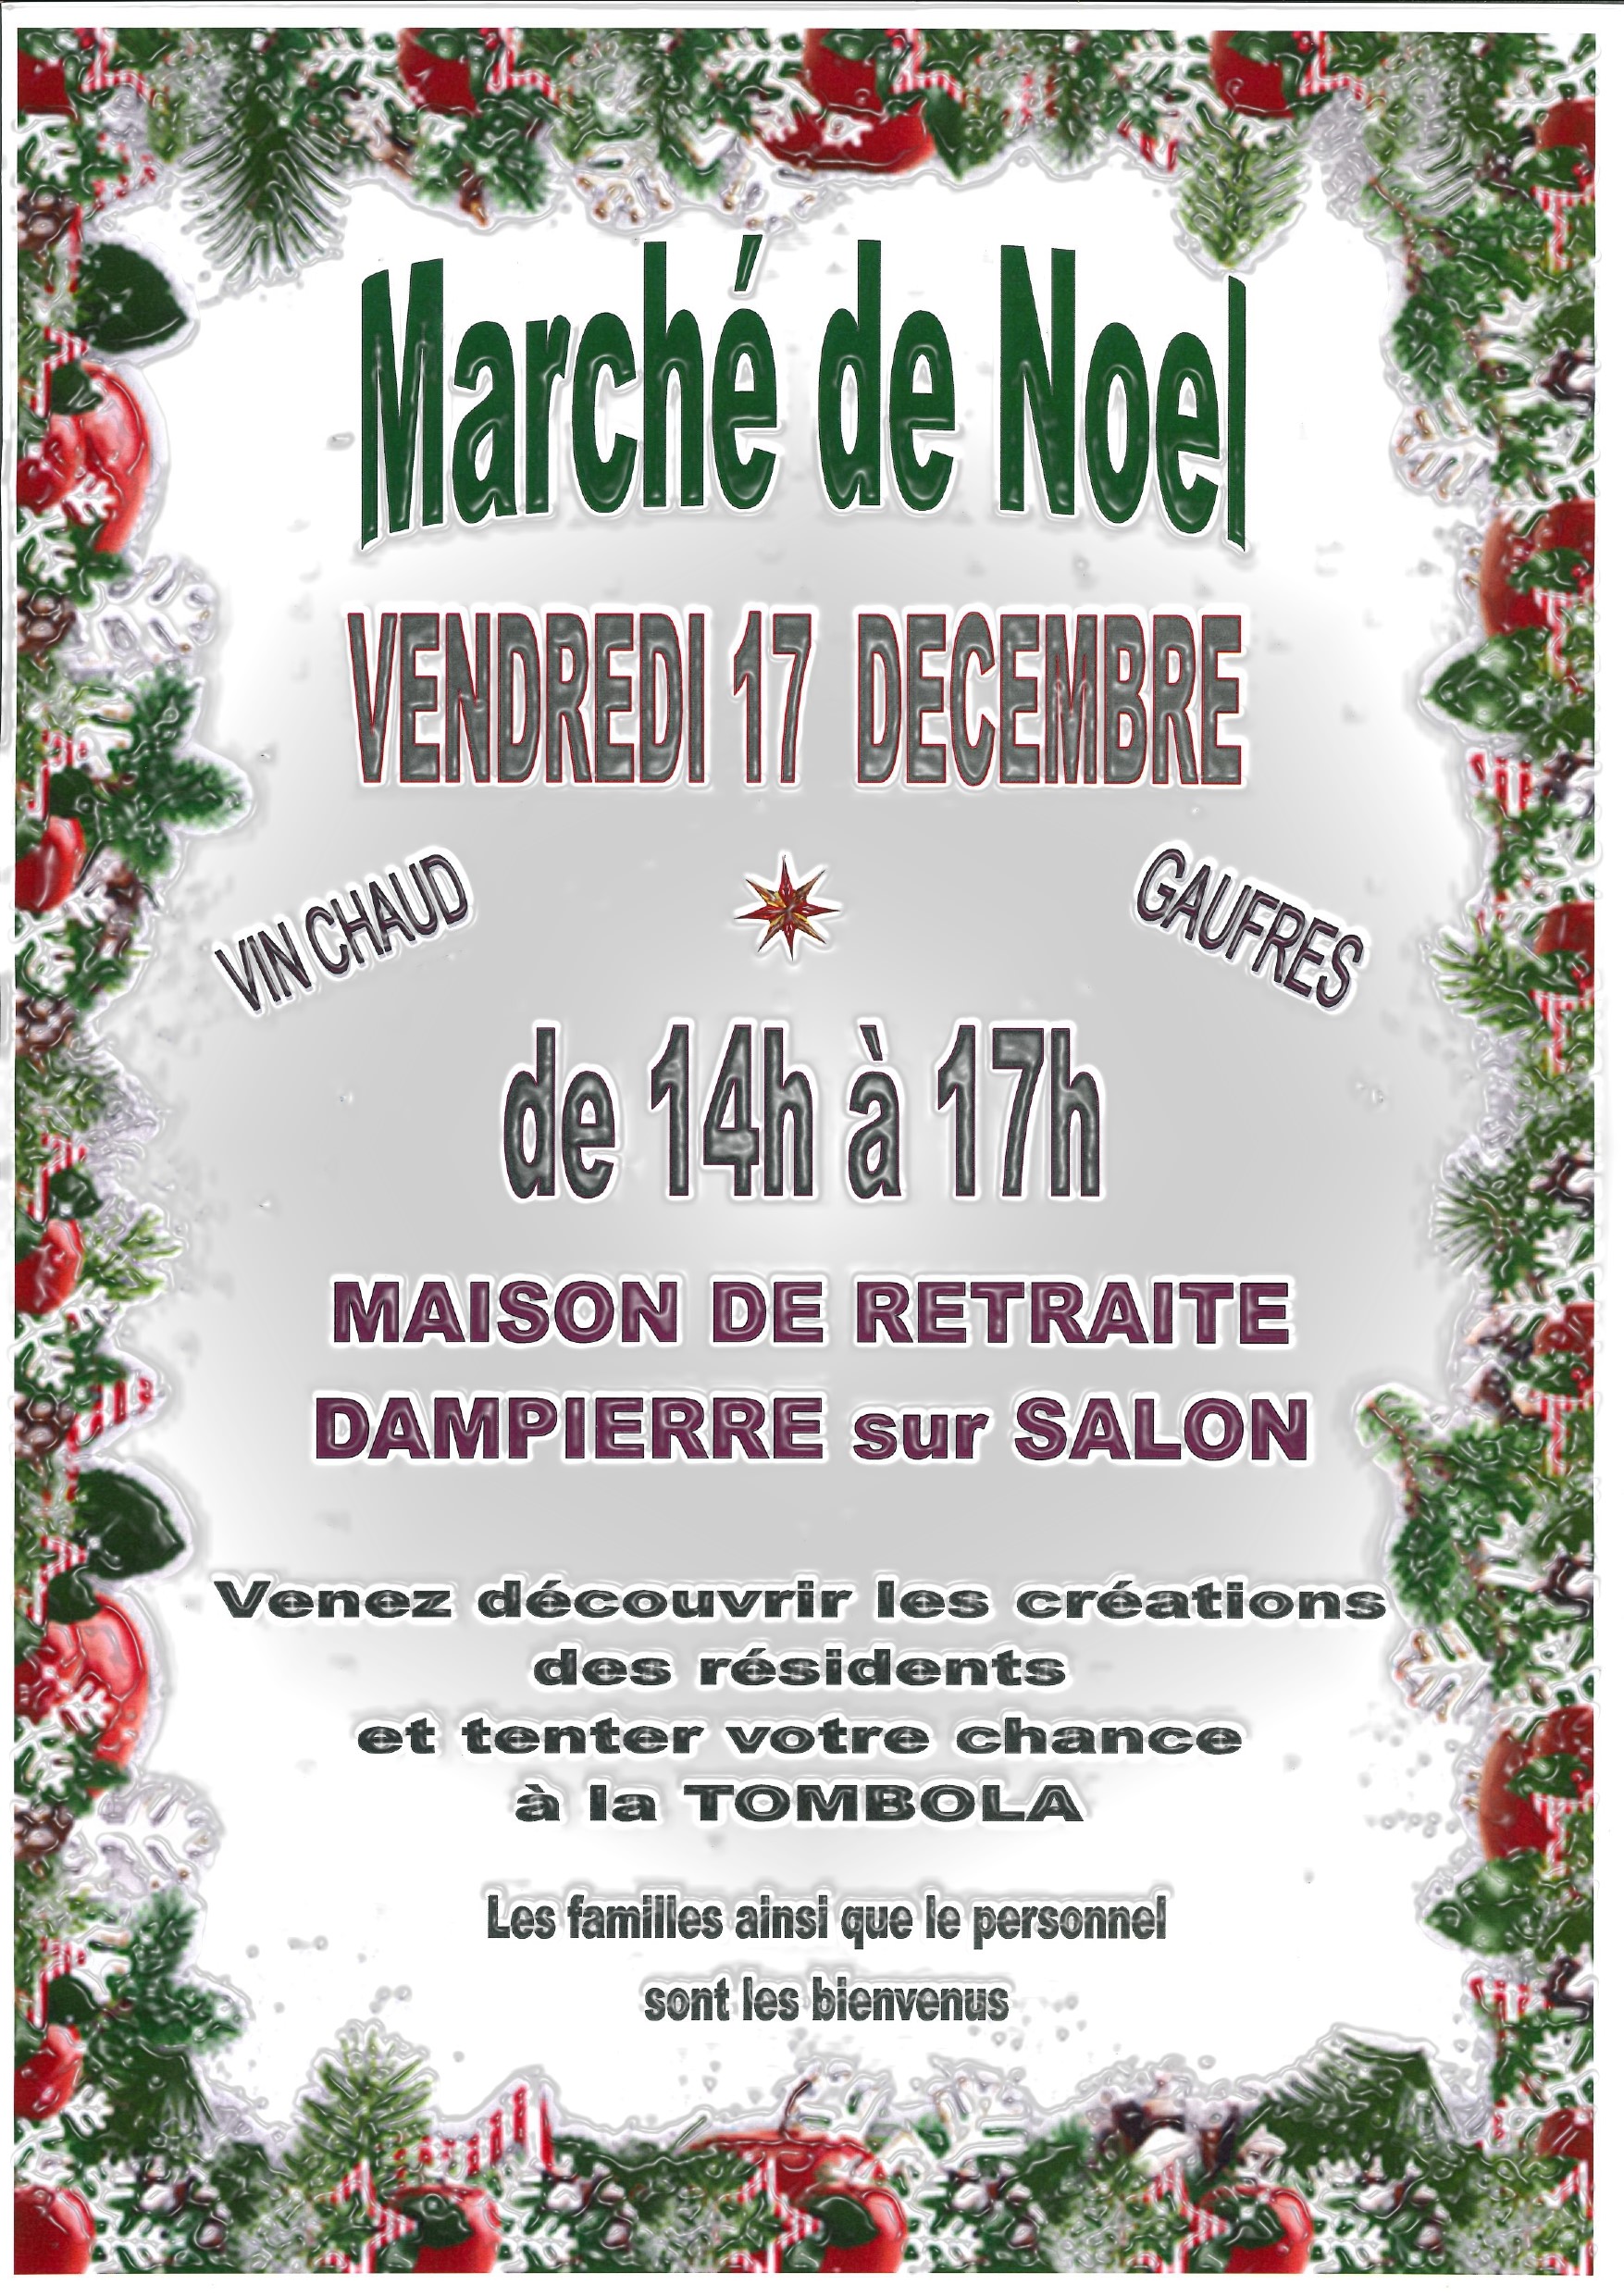 Marché de Noël Dampierre - 17 décembre